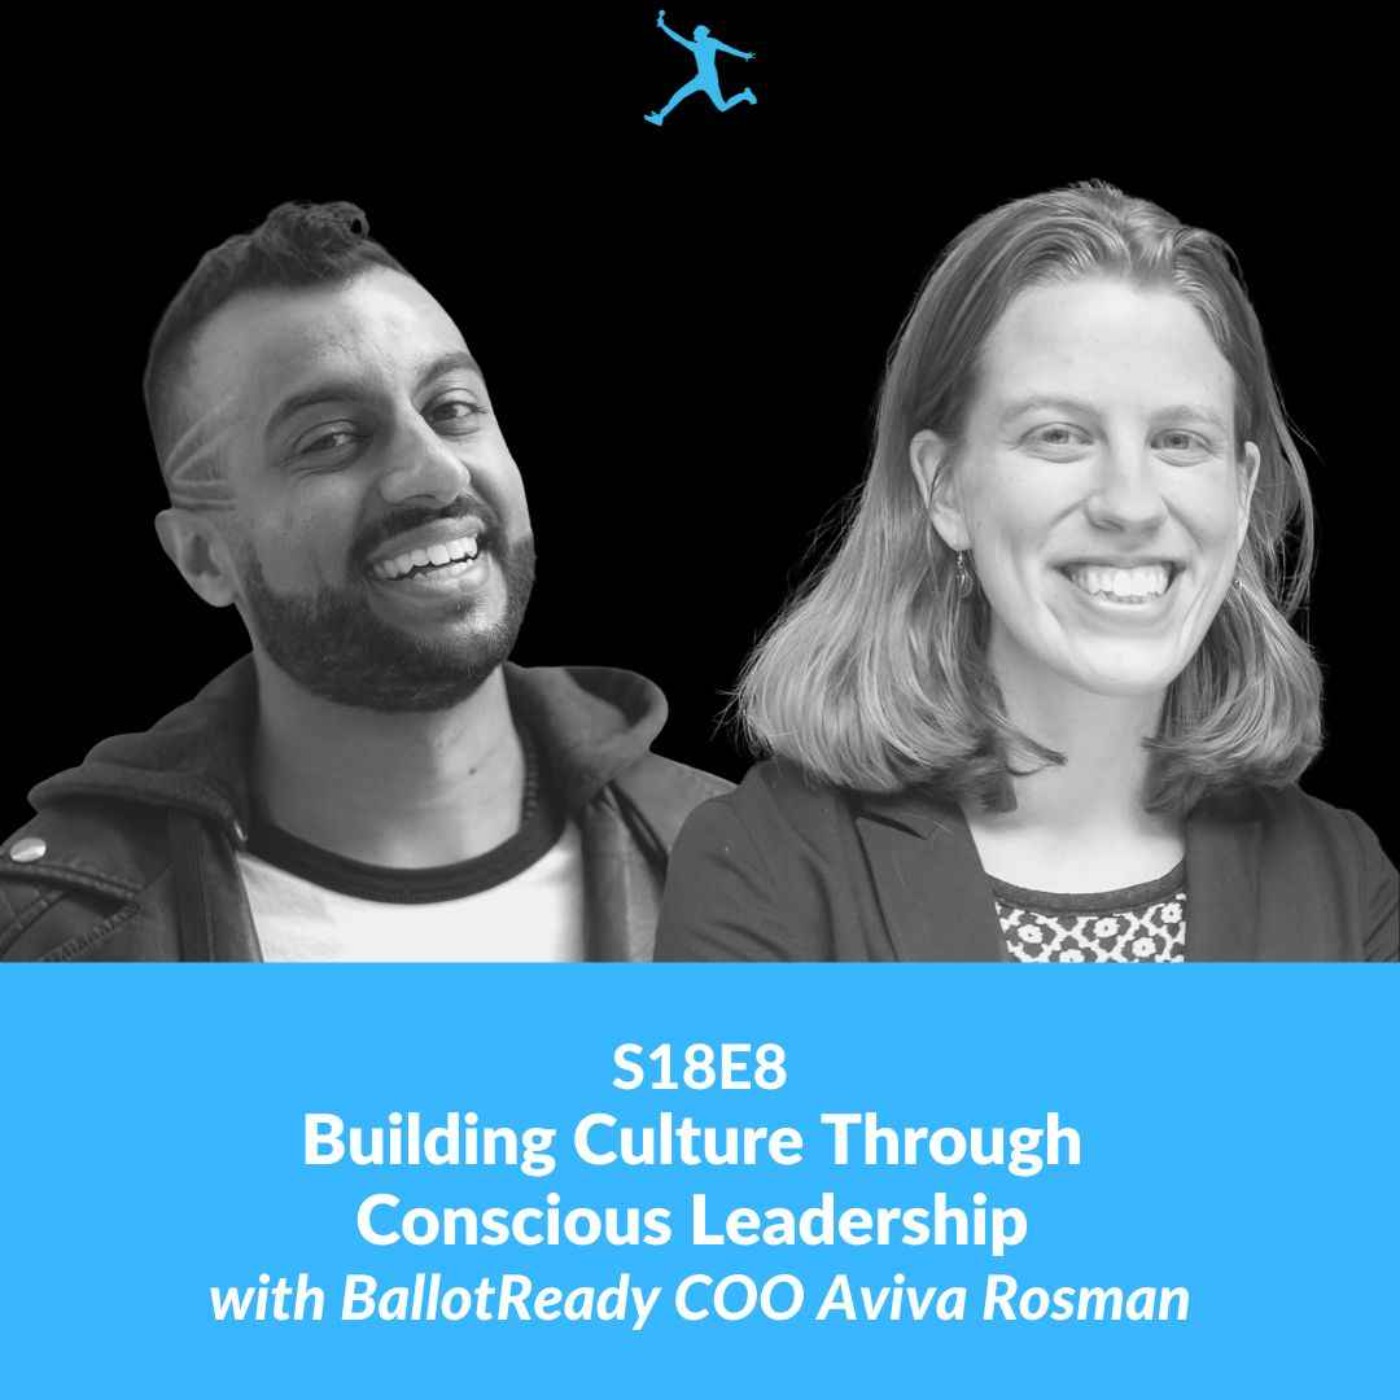 S18E8: Building Culture Through Conscious Leadership with BallotReady COO Aviva Rosman